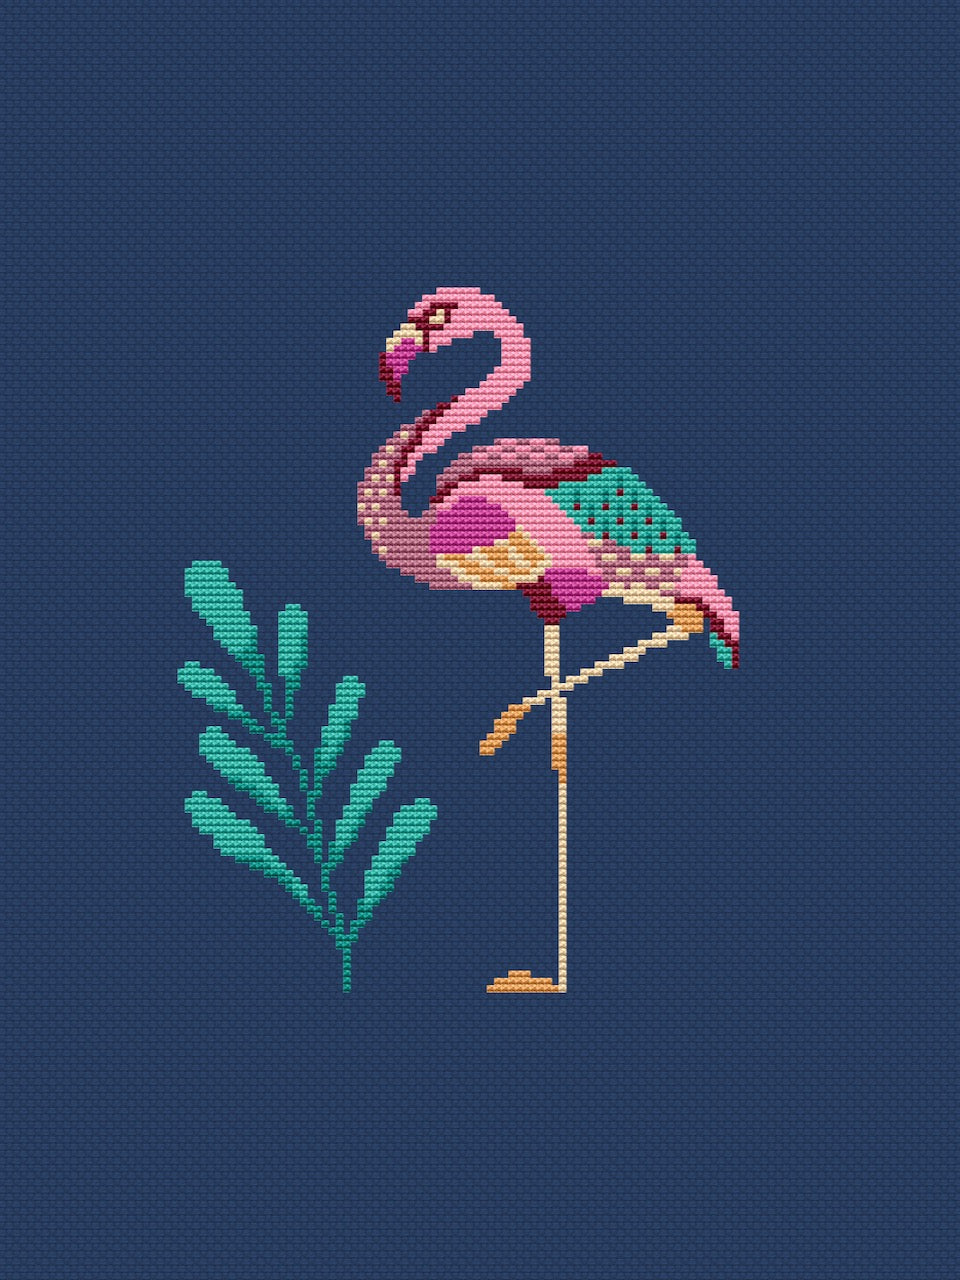 Flamingo cross stitch 